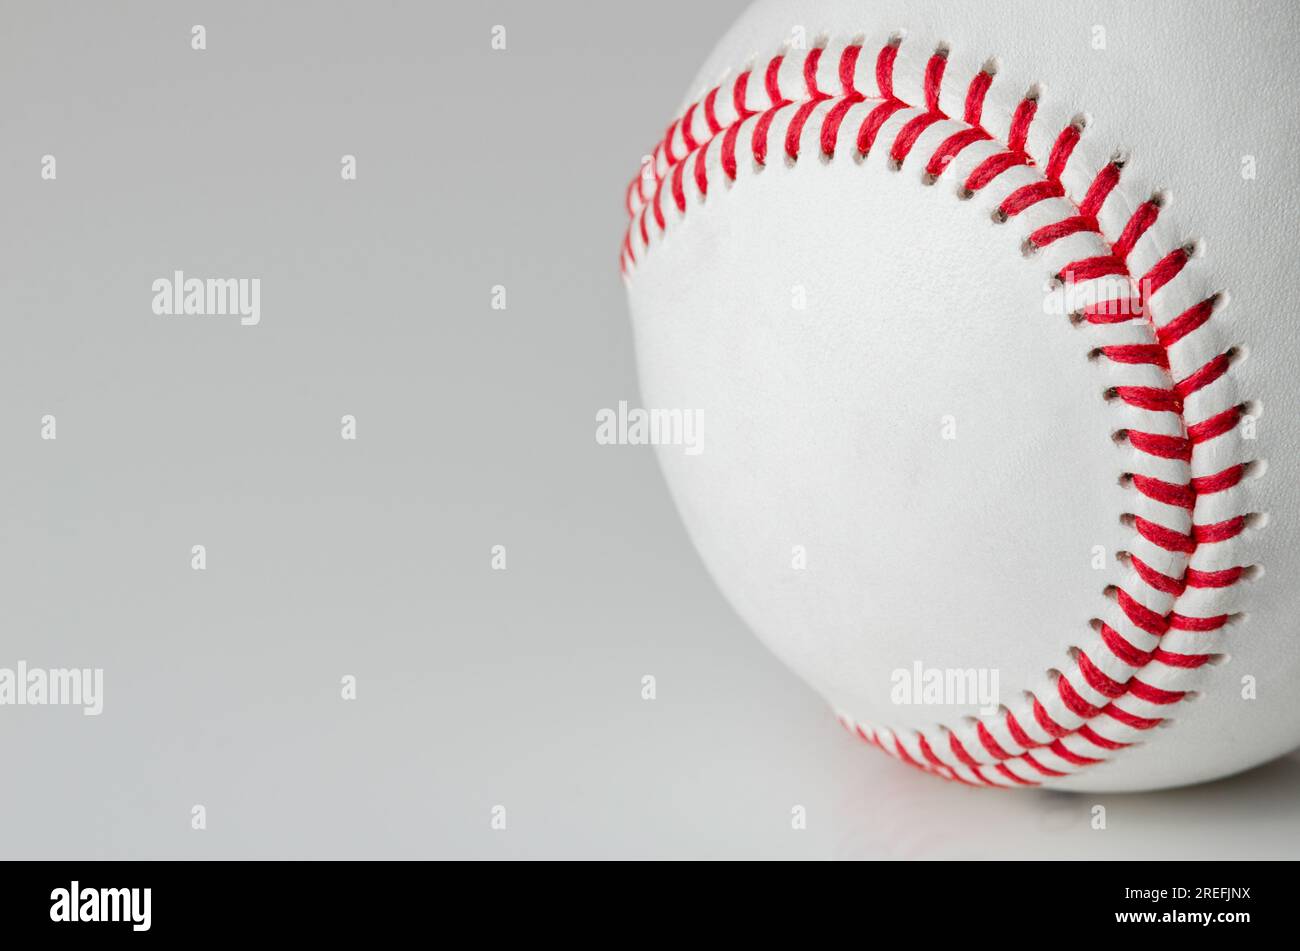 Primer plano de una pelota de béisbol blanca con puntos rojos sobre un fondo blanco Foto de stock